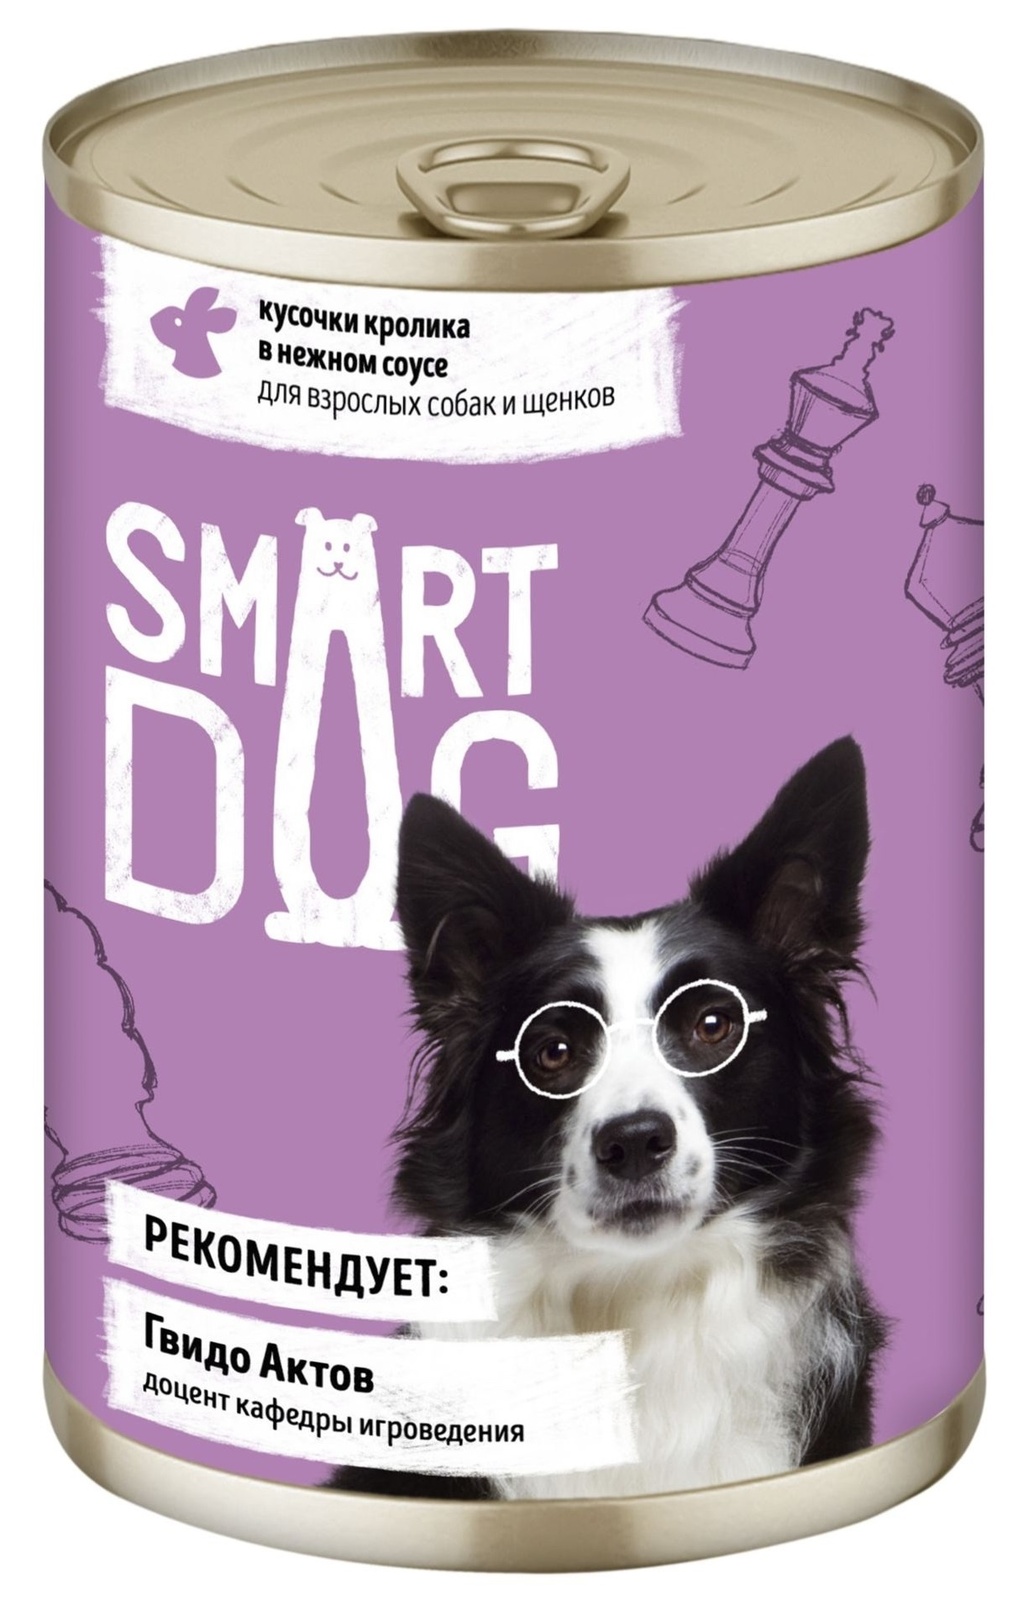 Smart Dog консервы Smart Dog консервы консервы для взрослых собак и щенков кусочки кролика в нежном соусе (240 г)